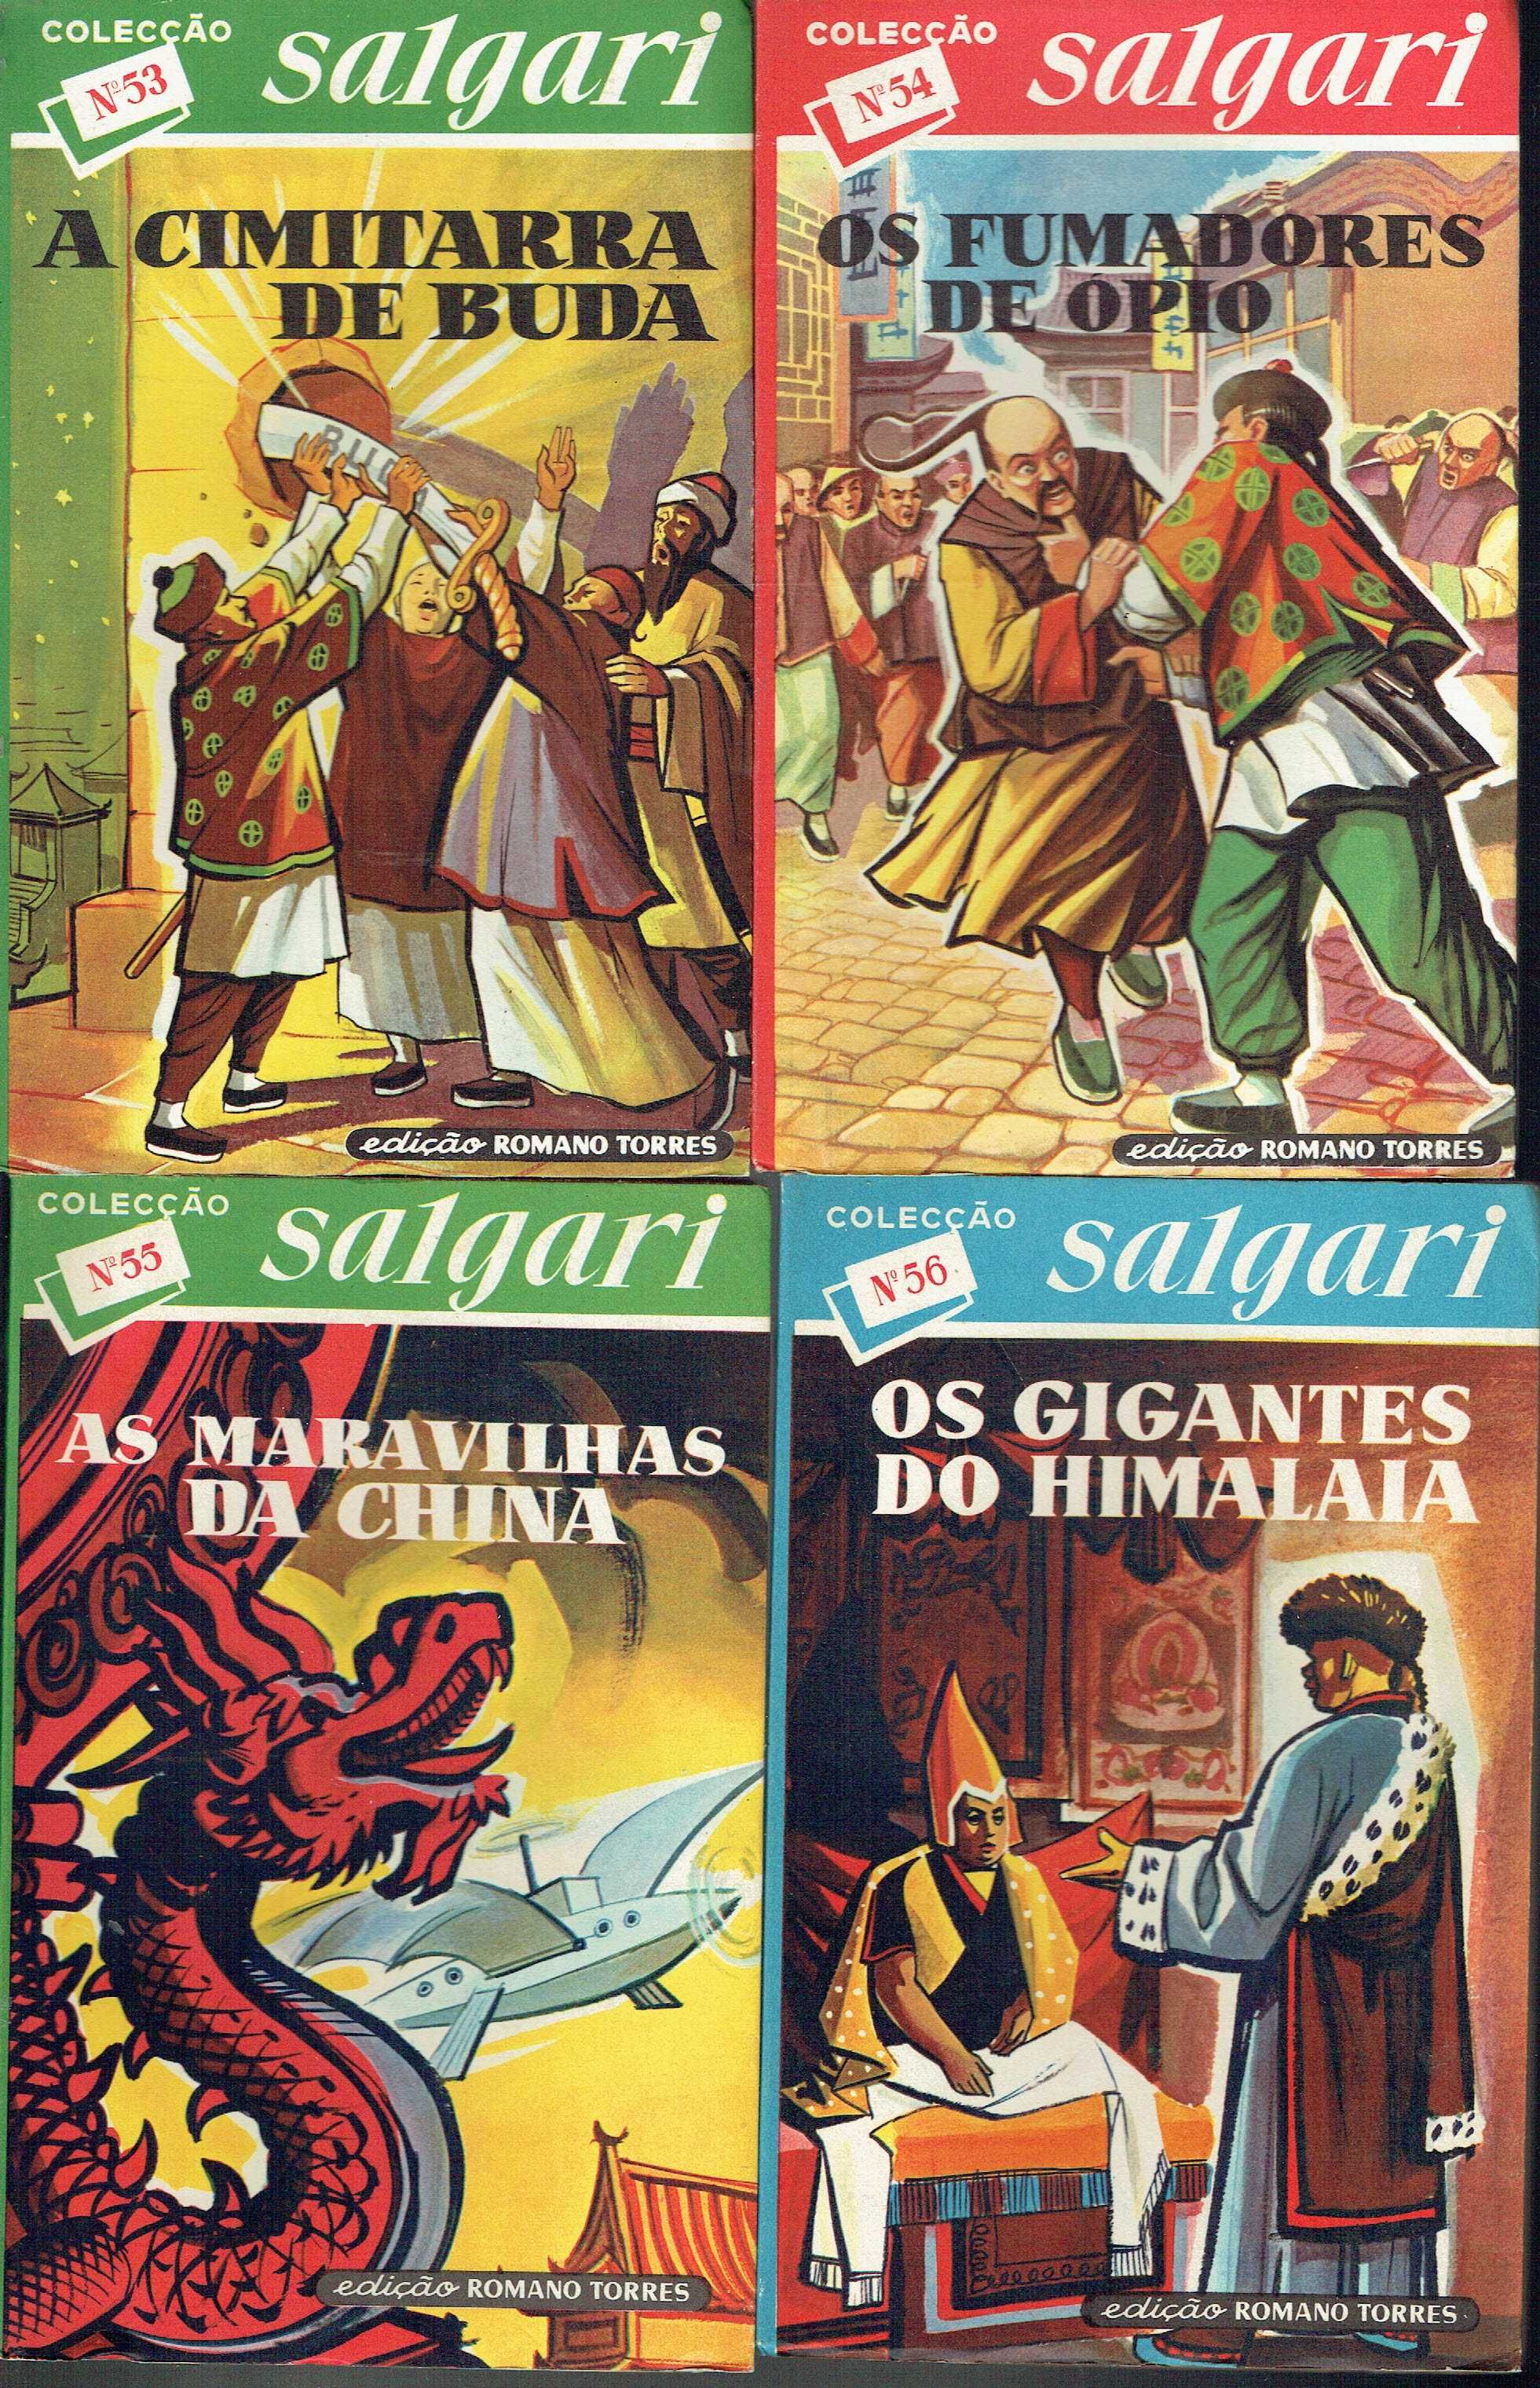 7865

Coleção Salgari
de Emilio Salgari

edição Romano Torres